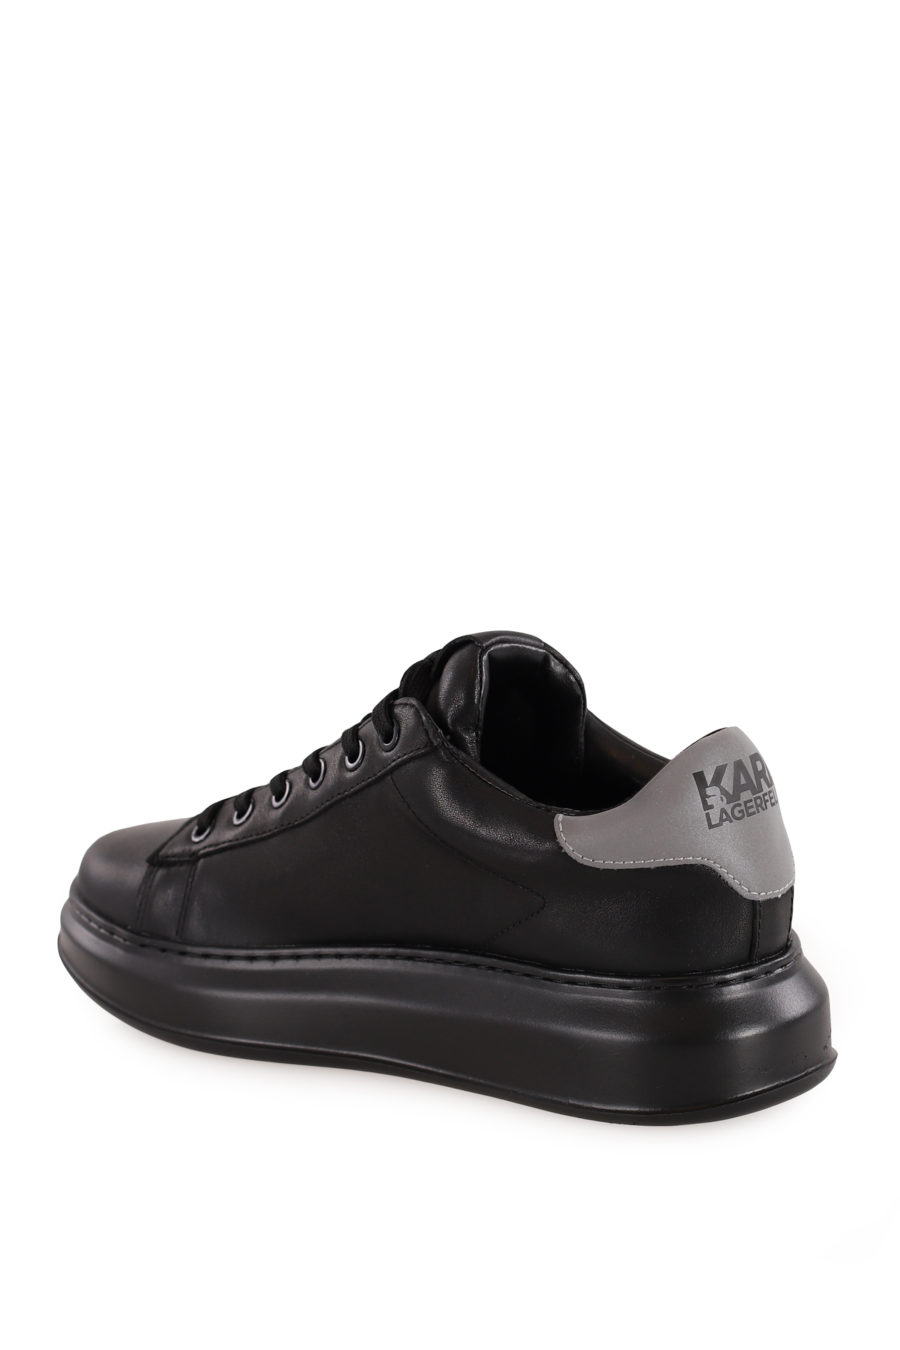 Zapatillas negras con logotipo 3D "Karl" - b133d856ee05ebef7eb8124765d9098b3859589f